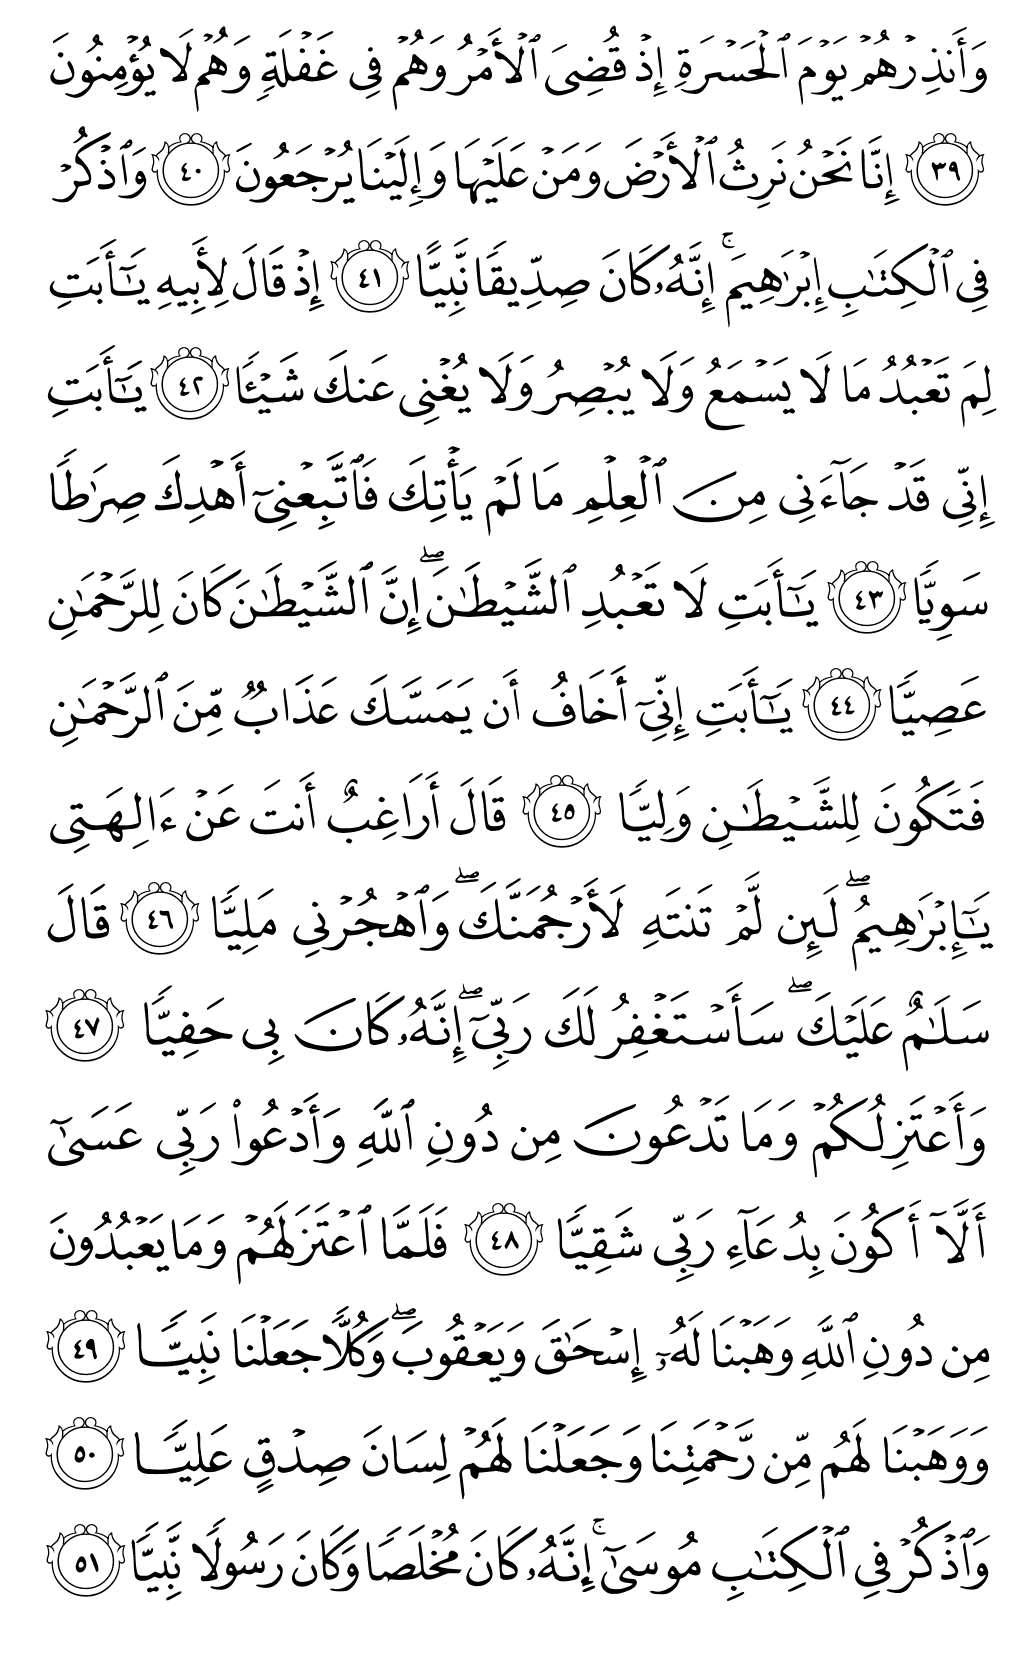 الصفحة رقم 308 من القرآن الكريم